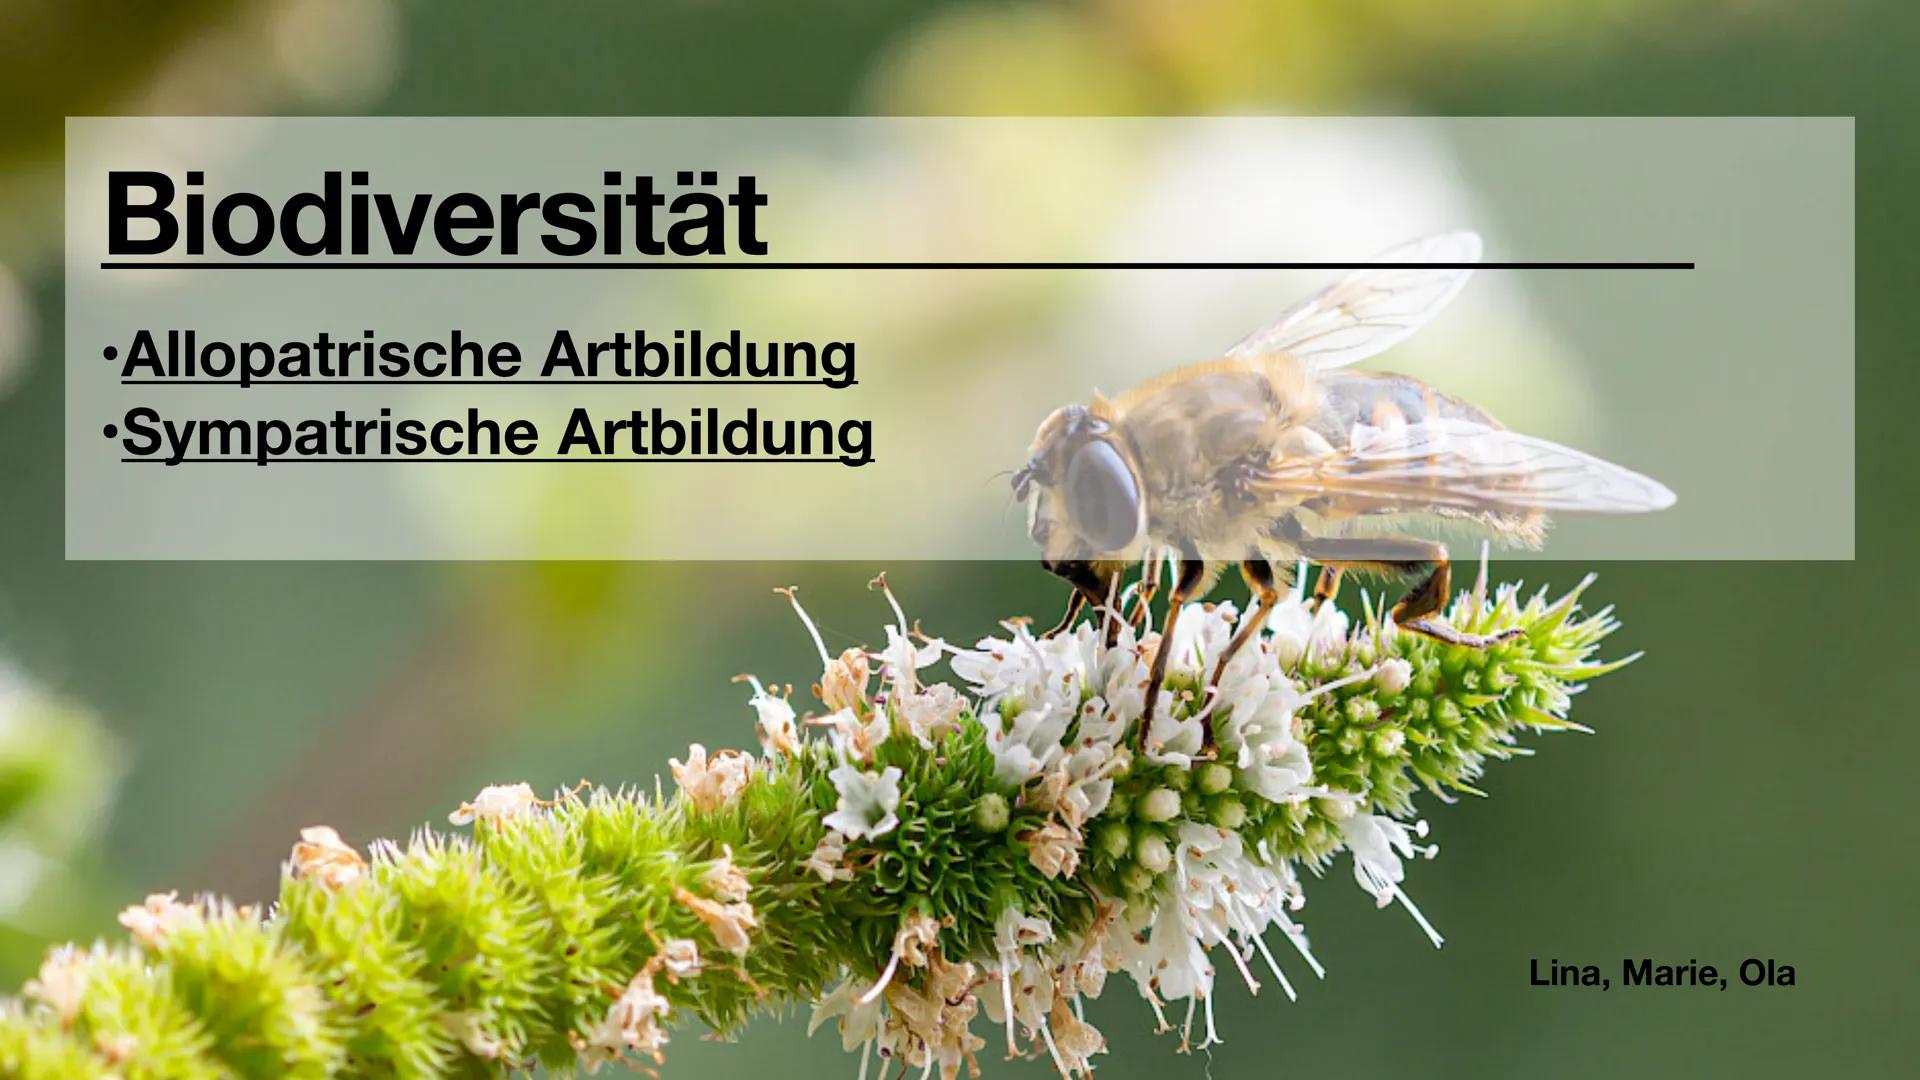 Biodiversität
•Allopatrische Artbildung
•Sympatrische Artbildung
Lina, Marie, Ola Biodiversität
Artenvielfalt Biodiversität
Artenvielfalt
• 